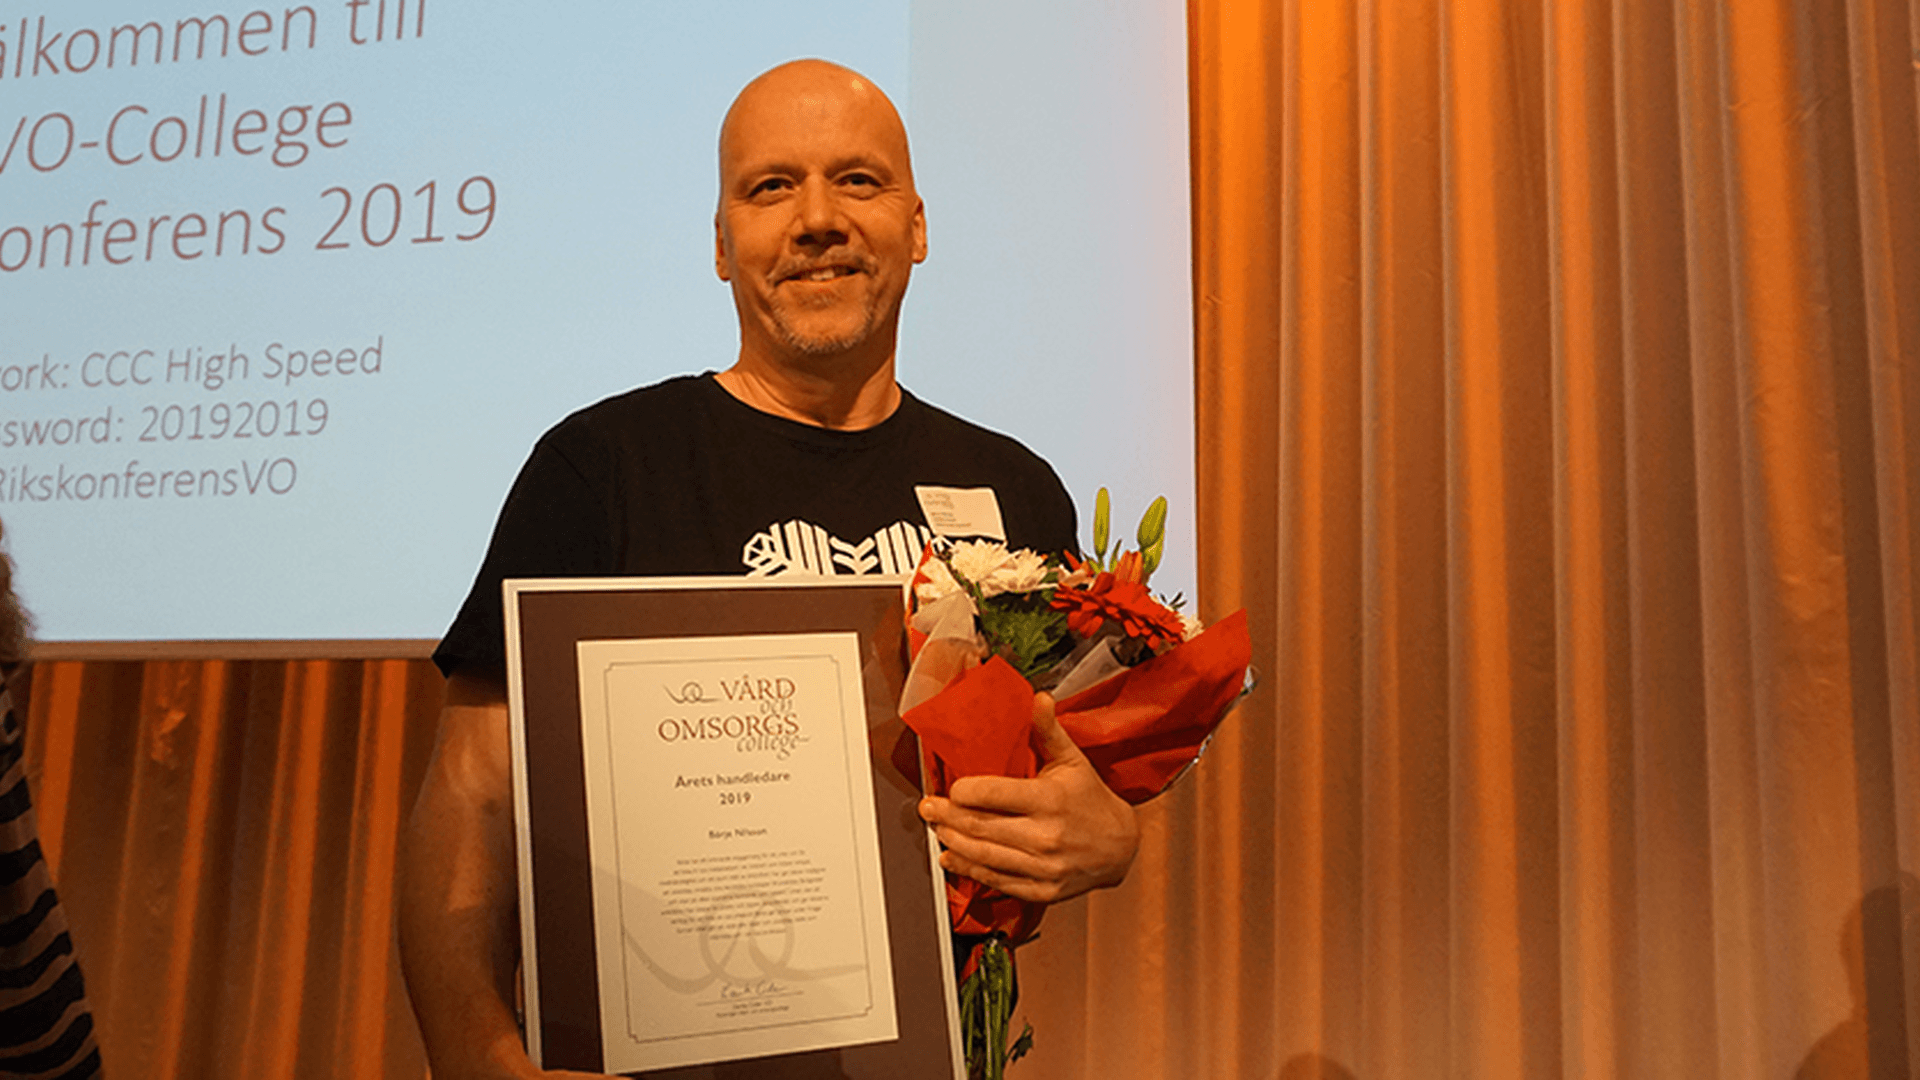 Börje Nilsson - Årets handledare 2019